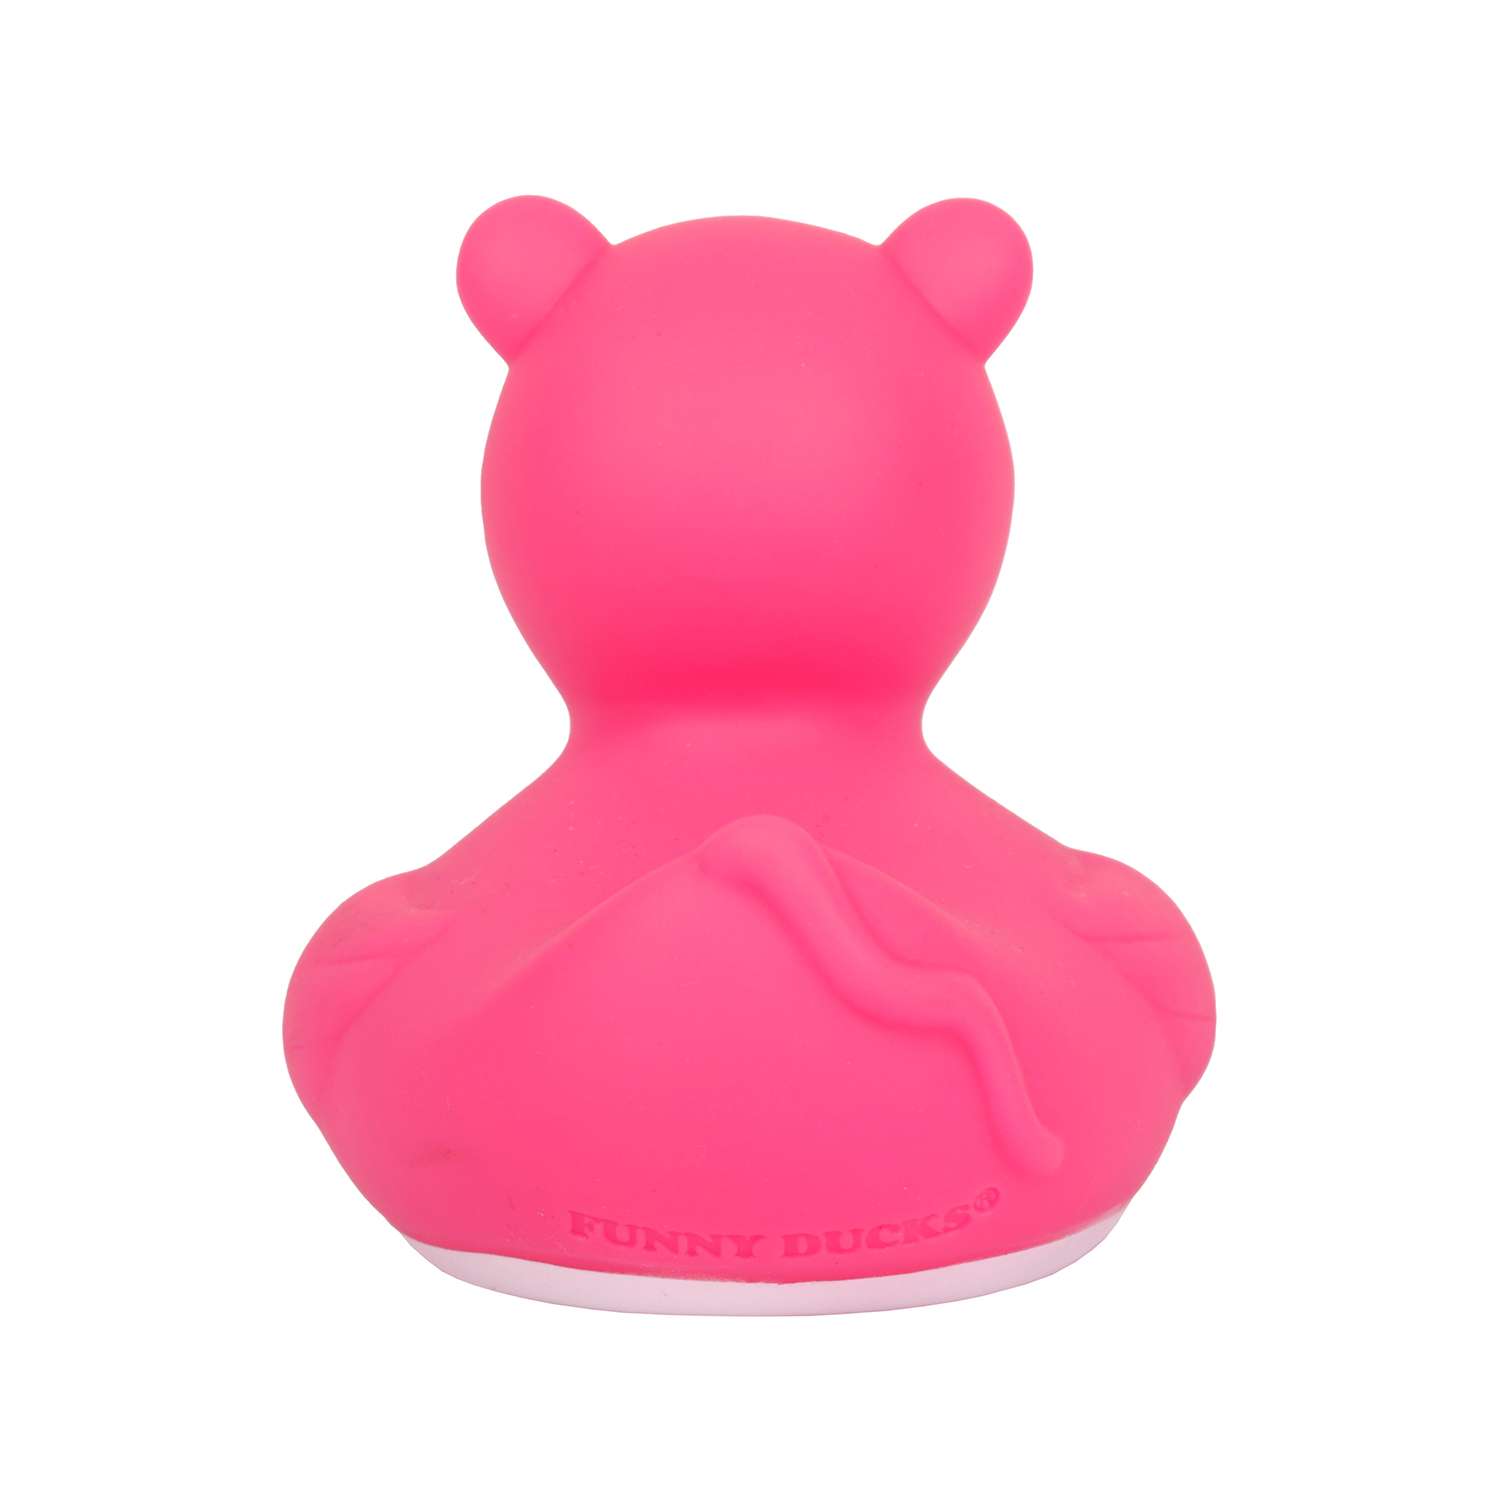 Игрушка для ванны сувенир Funny ducks Розовая пантера уточка 1314 - фото 5